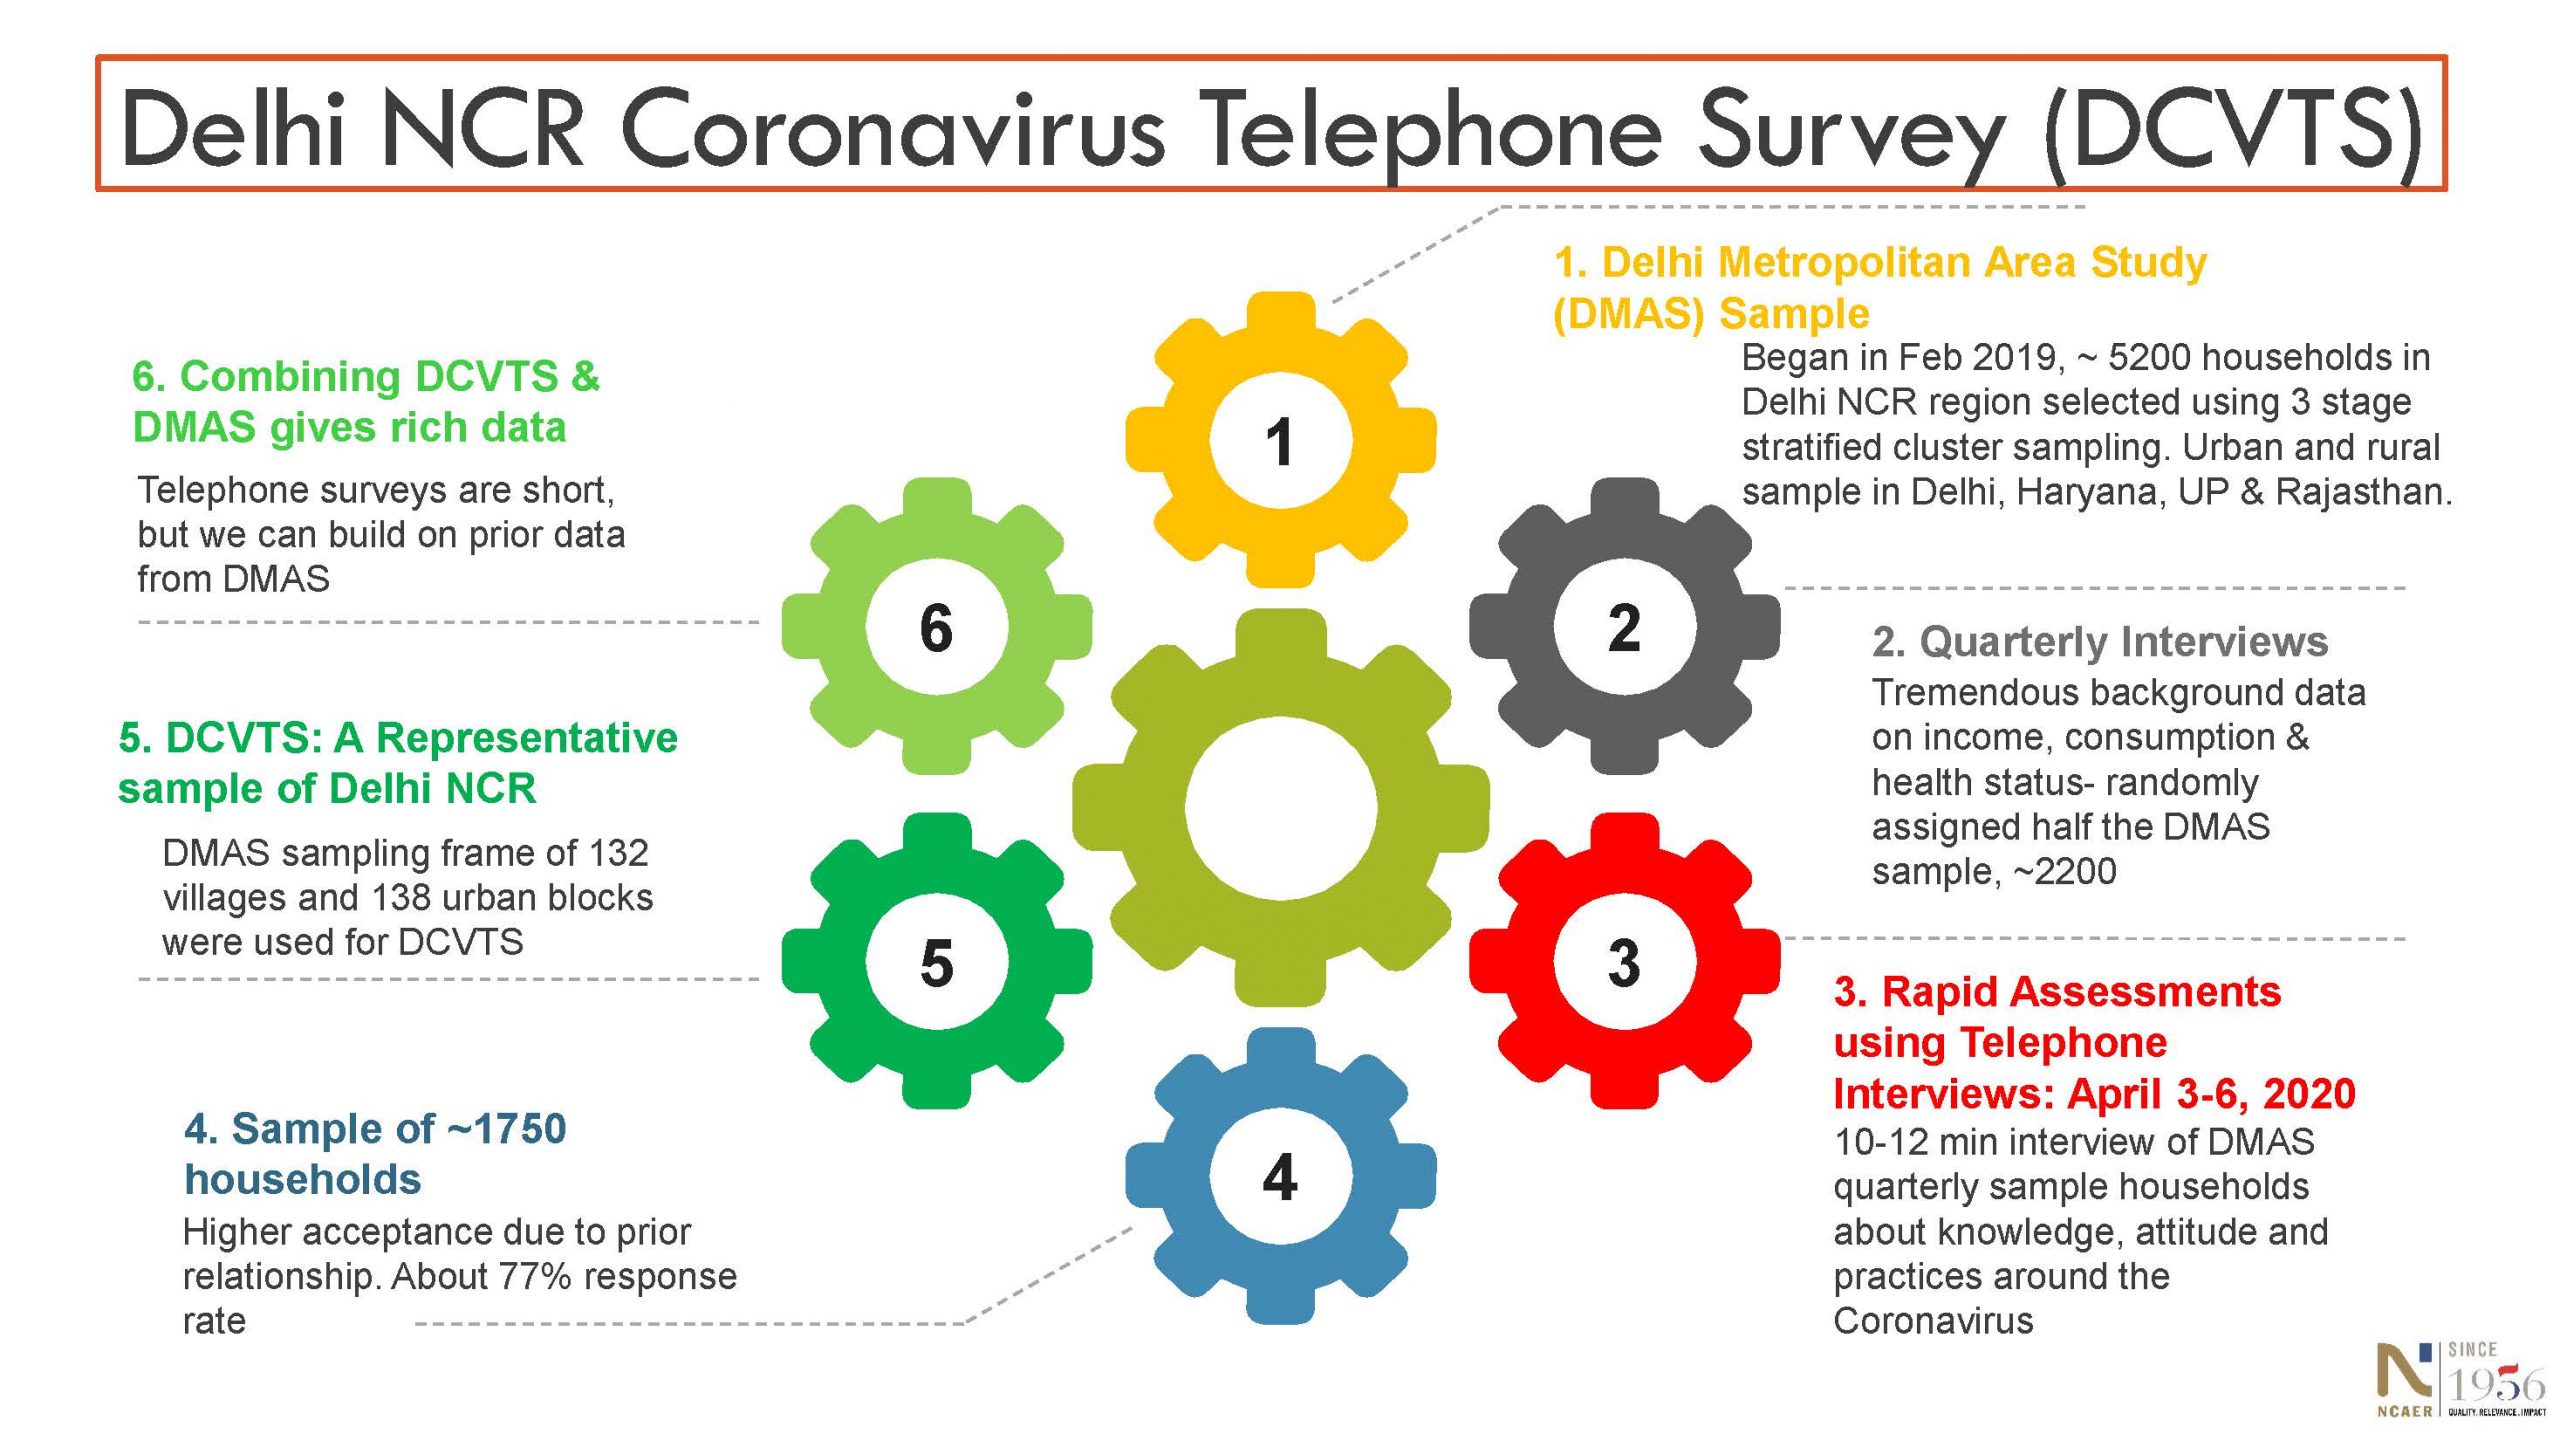 670Delhi NCR Coronavirus Telephone Survey (DCVTS)